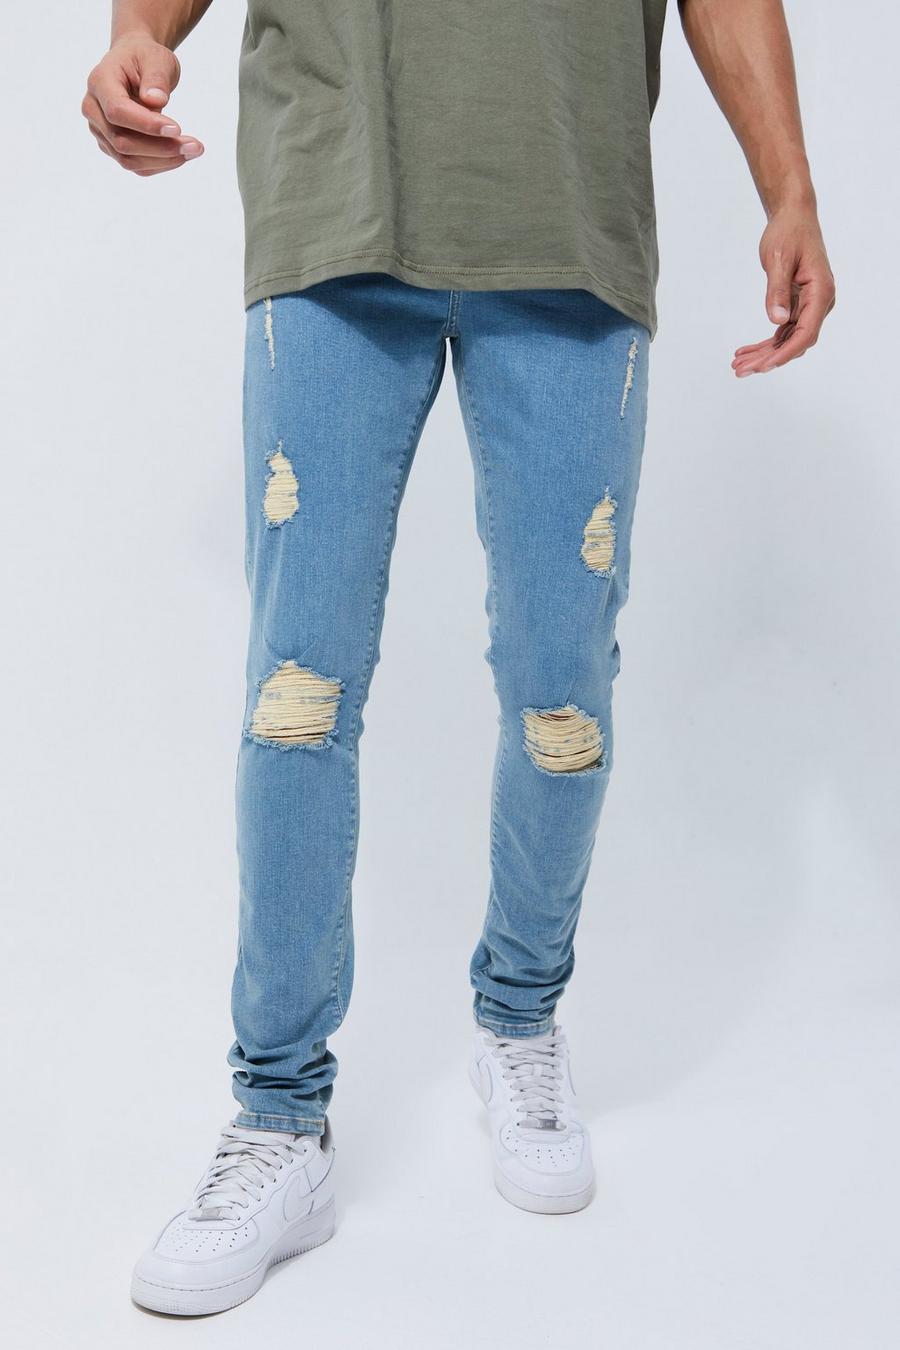 Jeans Tall Skinny Fit in Stretch con spacco ampio e strappi sul ginocchio, Antique wash azzurro image number 1